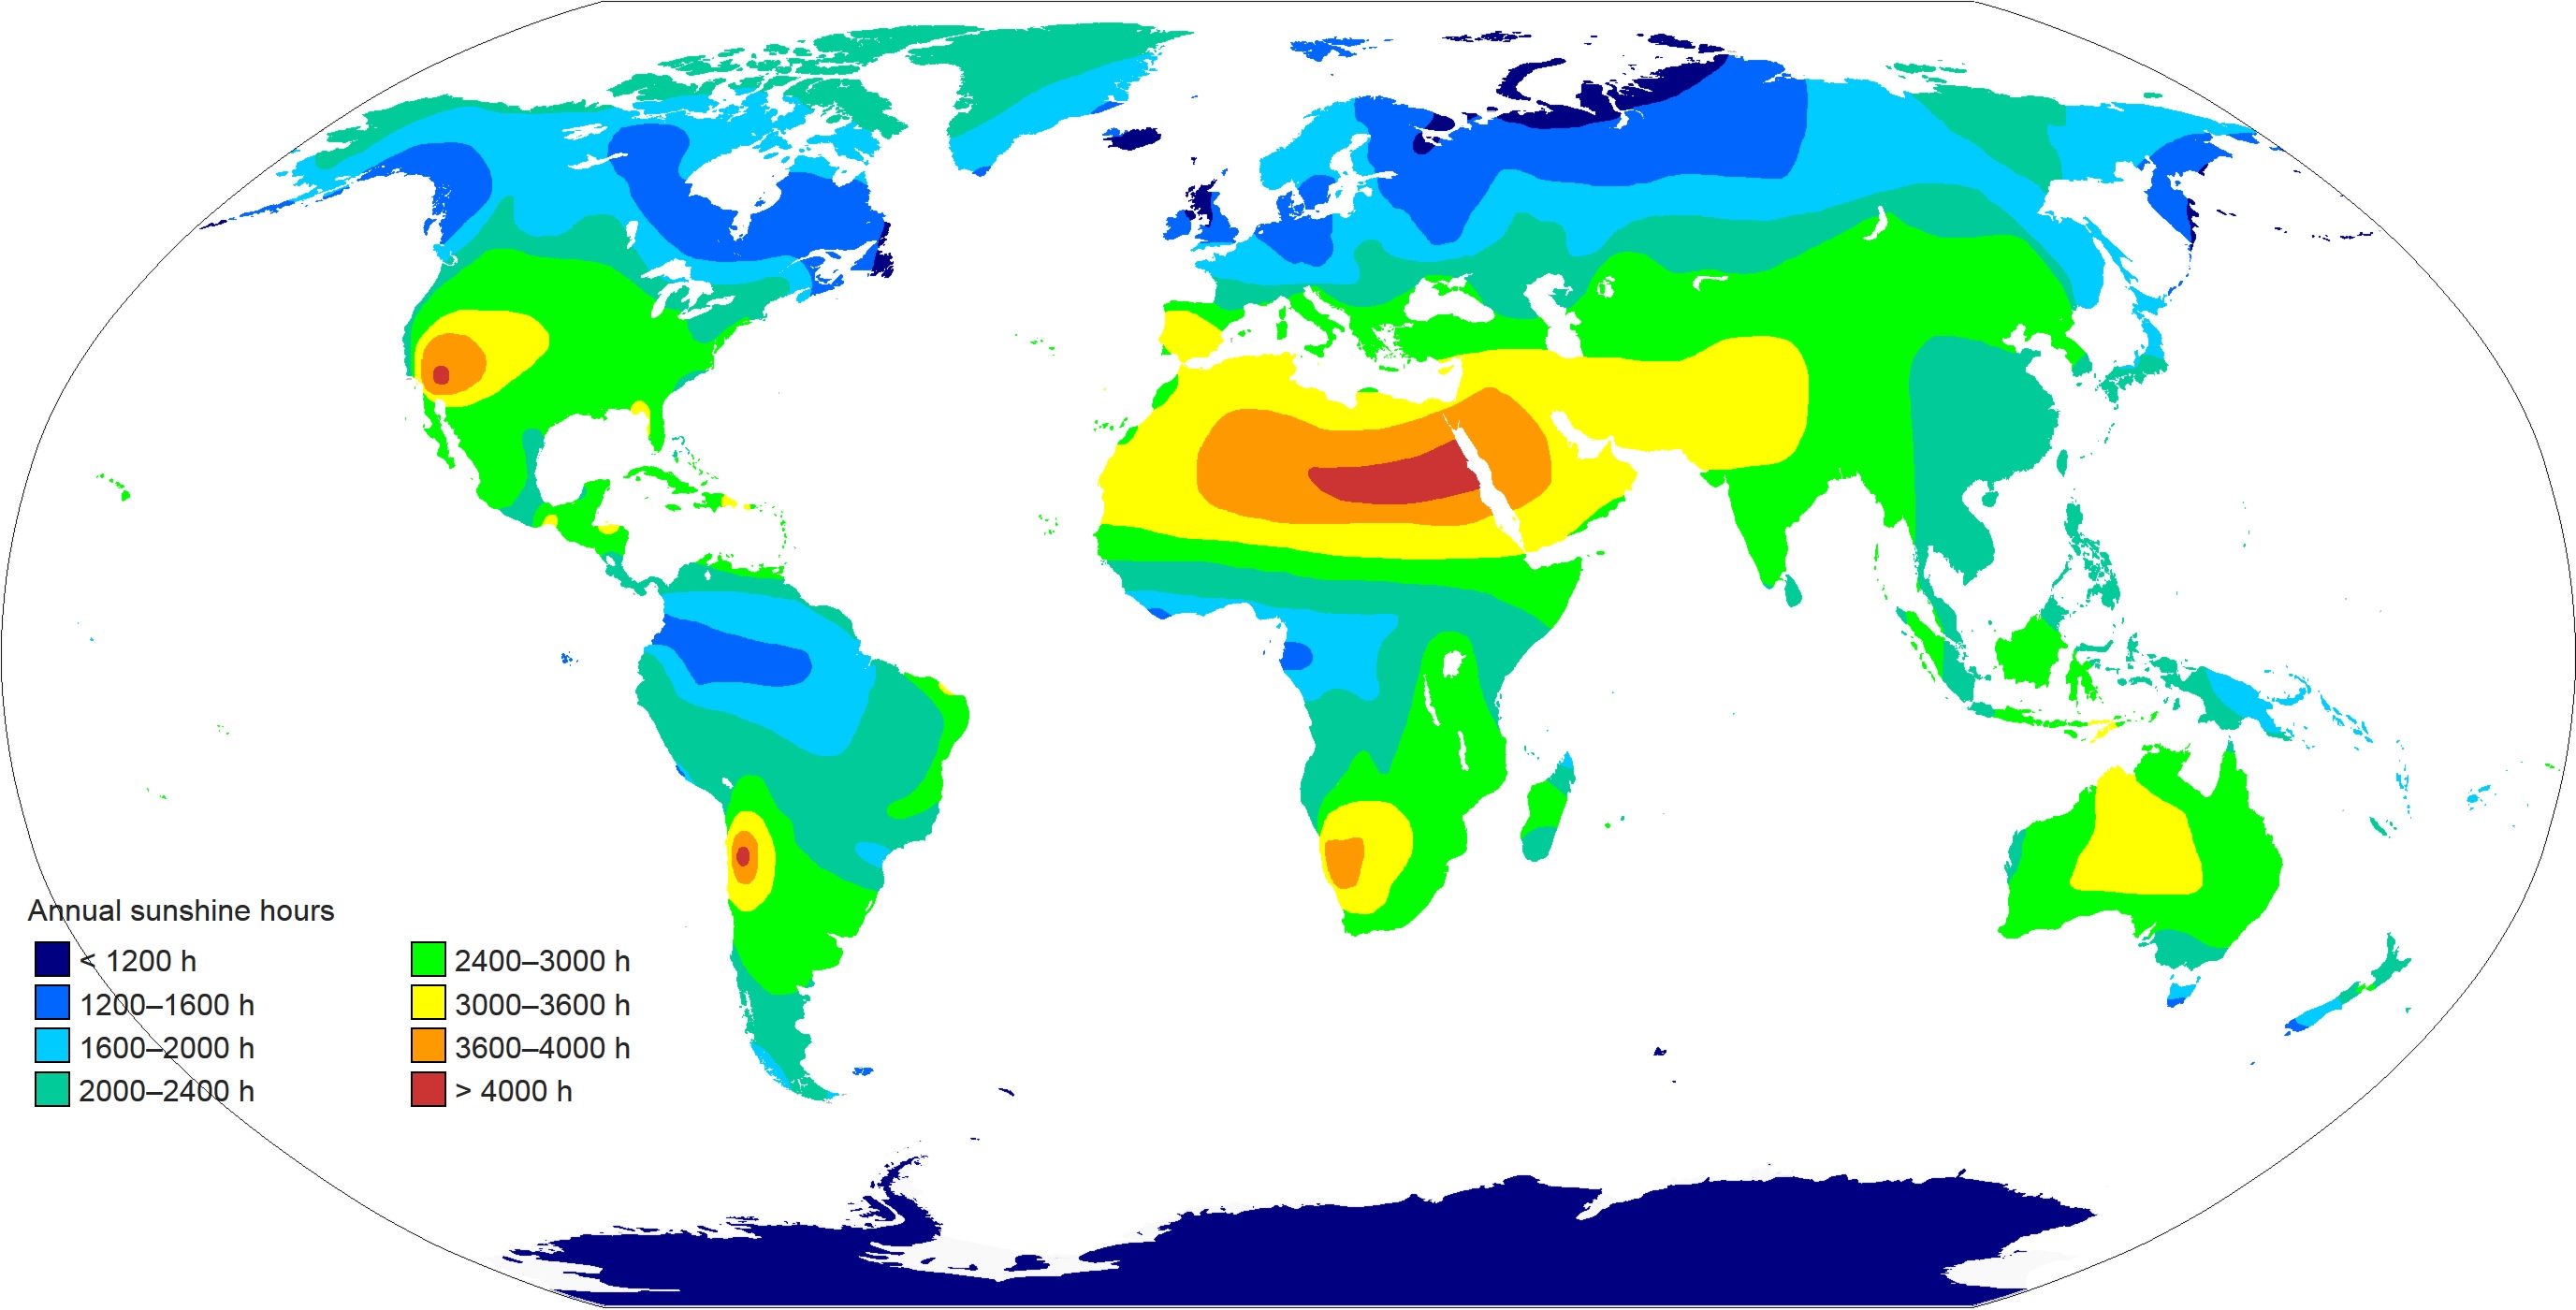 Average sunshine hours map of the world